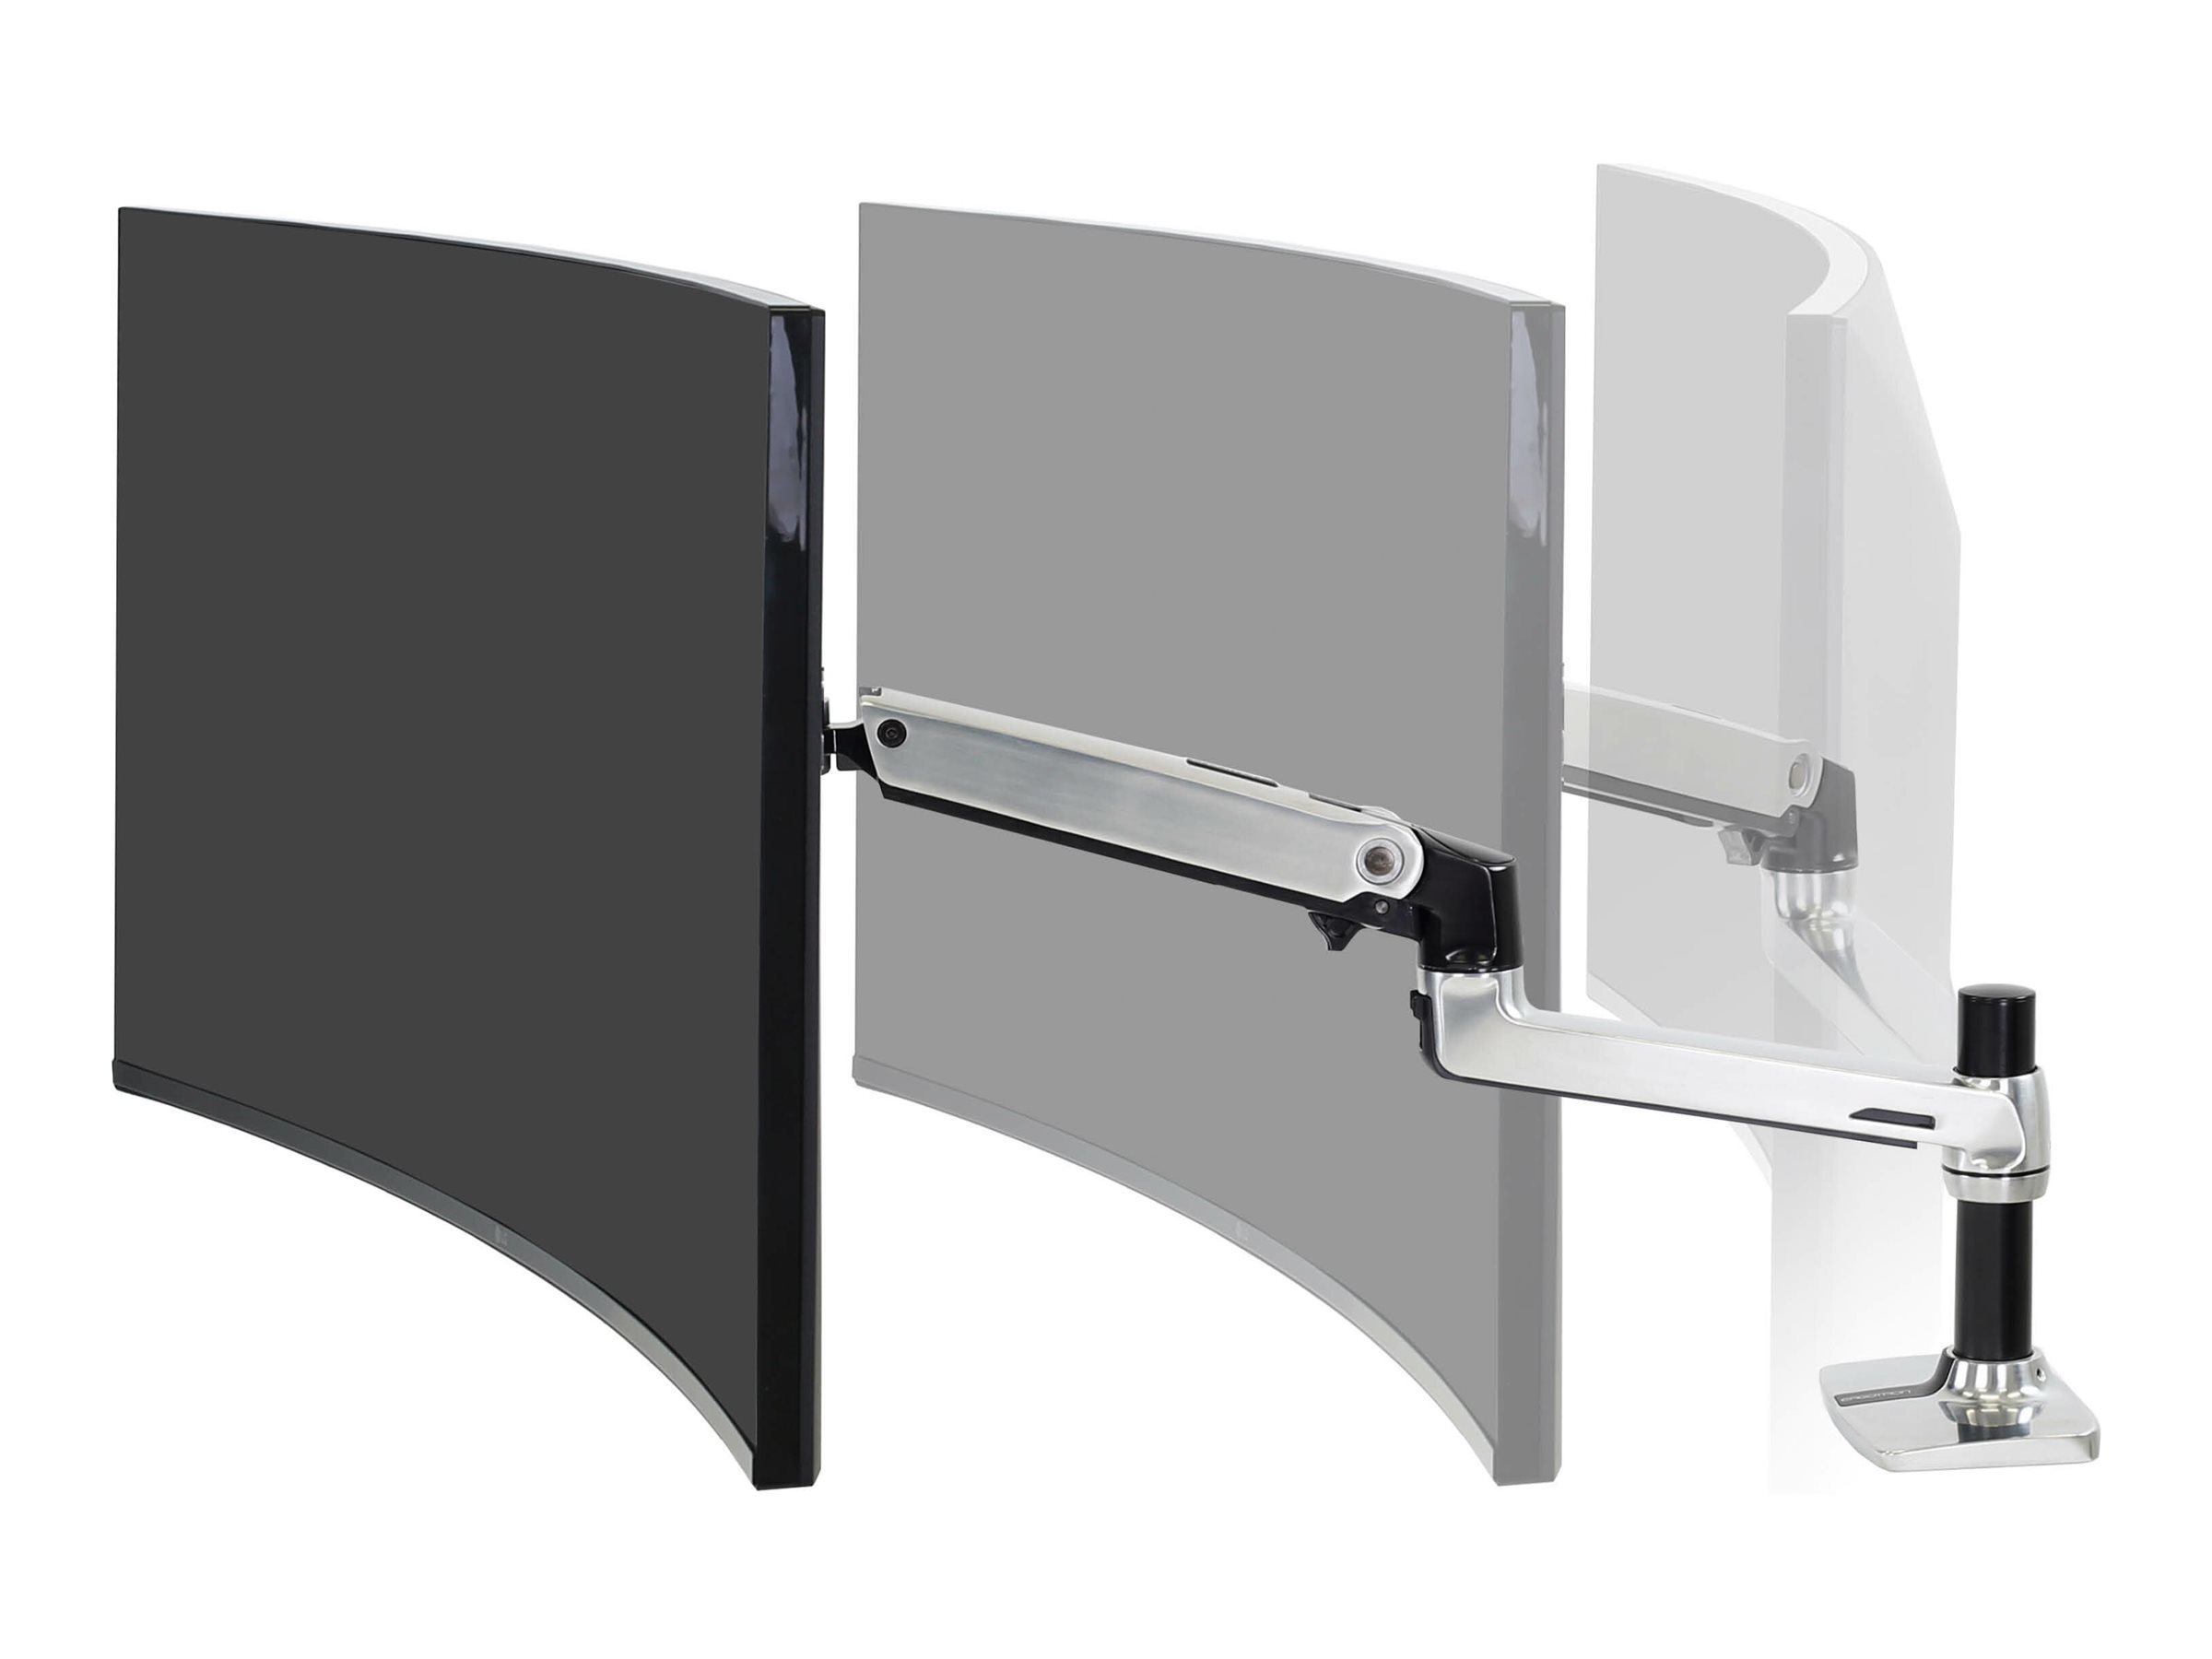 Ergotron LX - Befestigungskit (Gelenkarm, Spannbefestigung für Tisch, Erweiterungsadapter, Befestigung für Kabeldurchgang, 7"-Säule) - für LCD-Display - Polished Aluminum - Bildschirmgröße: bis zu 86,4 cm (bis zu 34 Zoll)